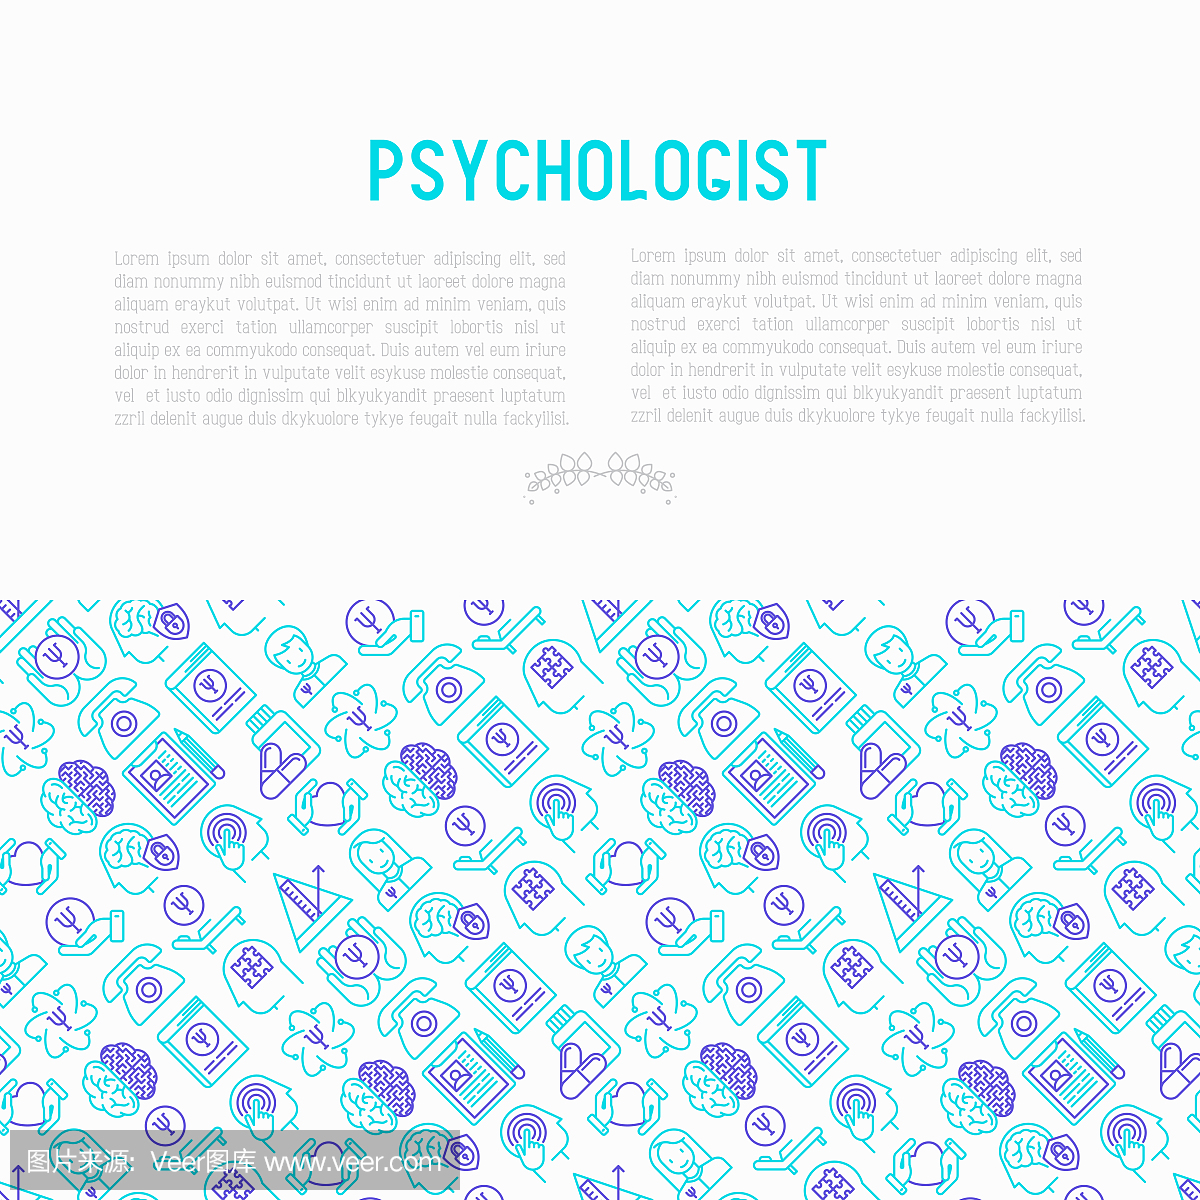 心理学家概念与细线图标:精神病医生,疾病史,扶